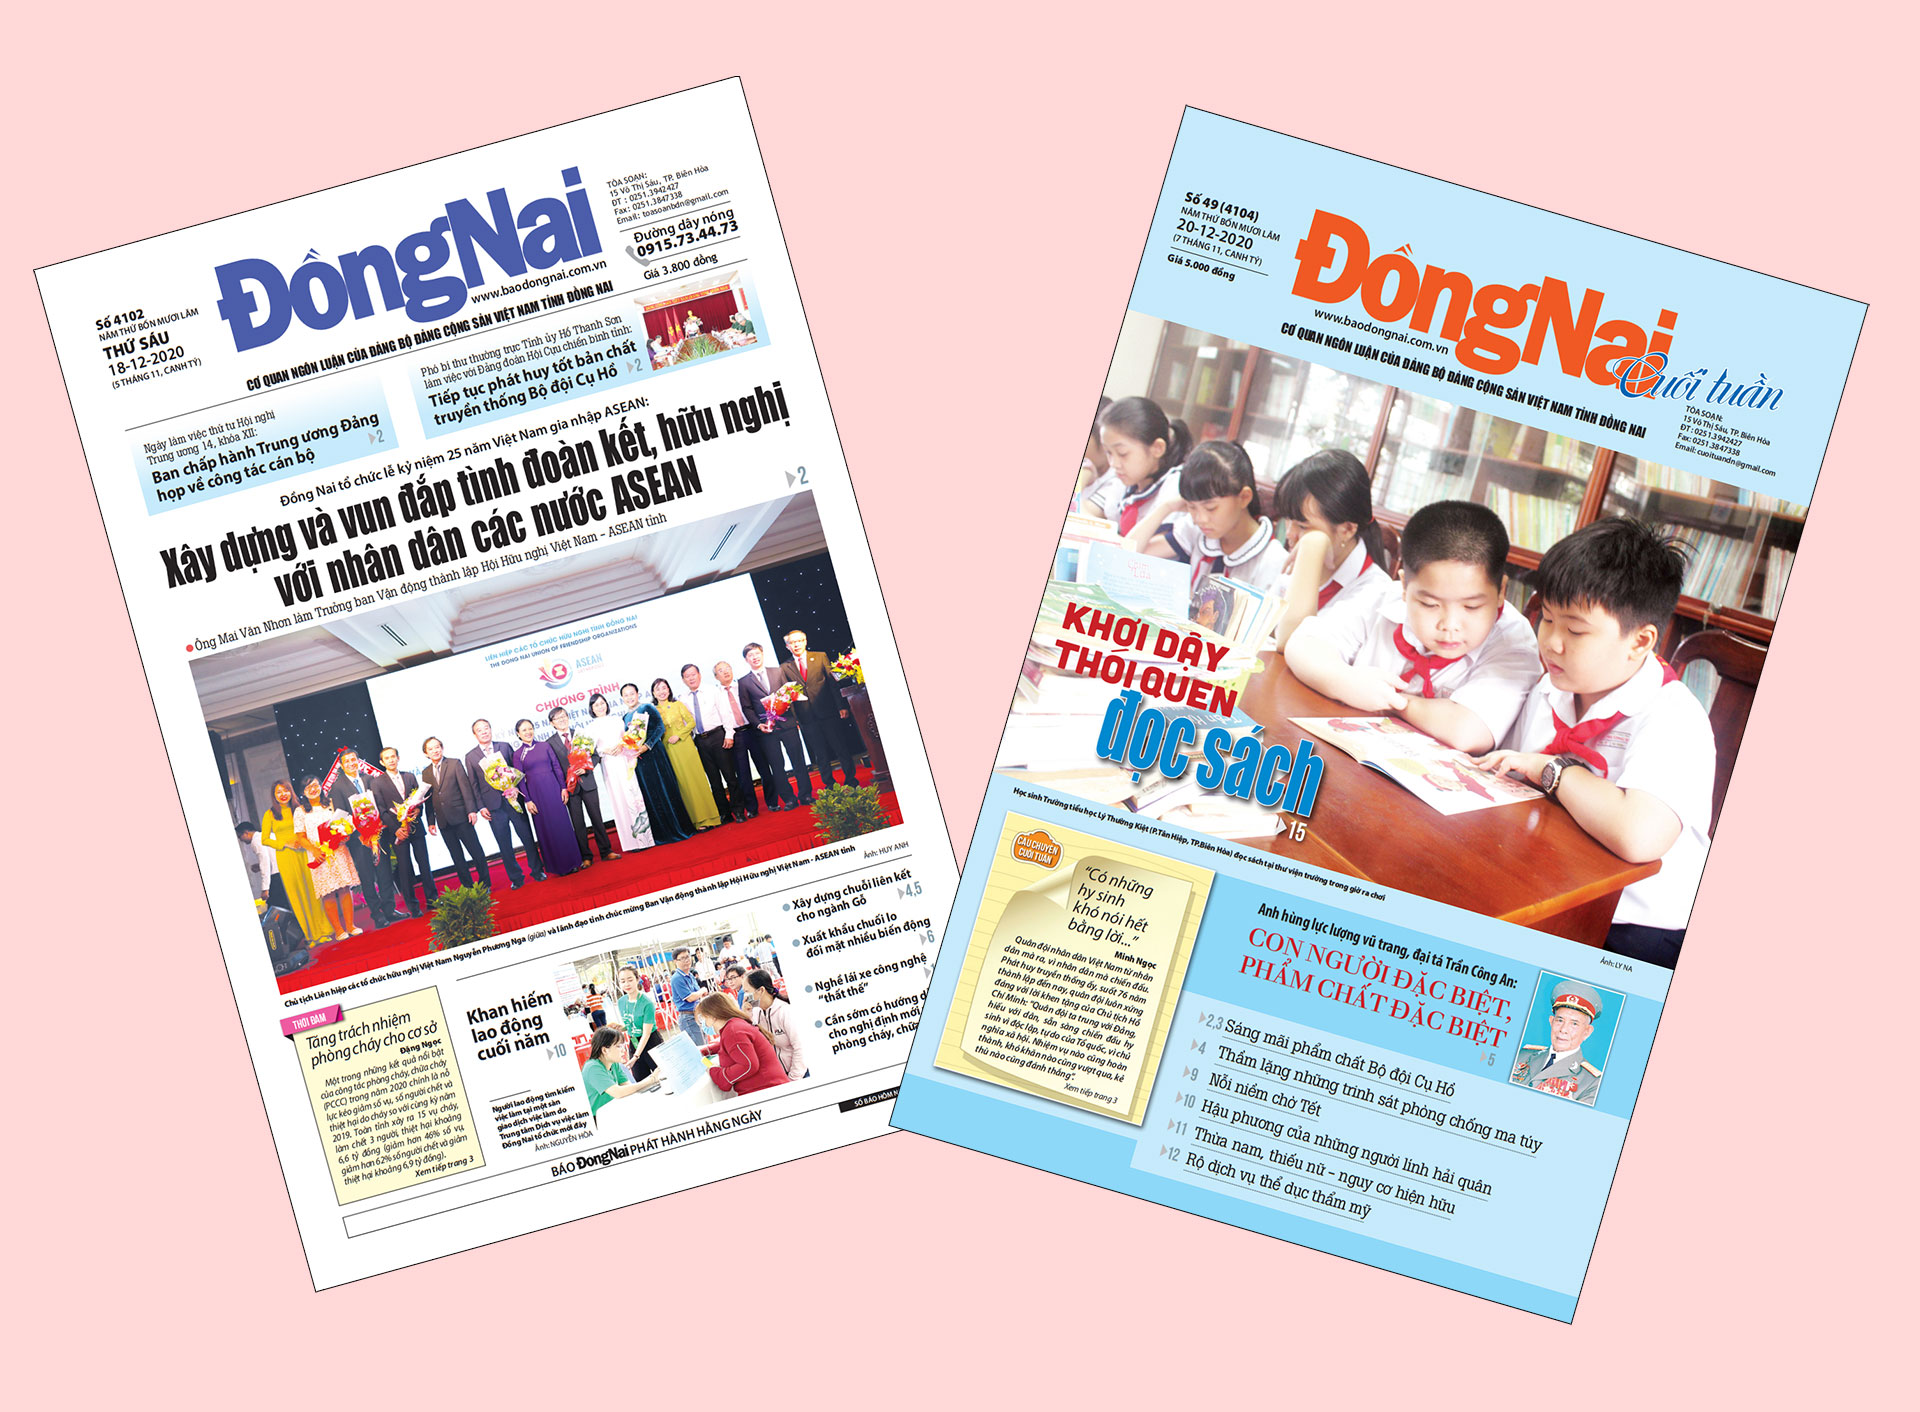 Bìa Báo Đồng Nai ra ngày 18-12 và Đồng Nai cuối tuần số 49